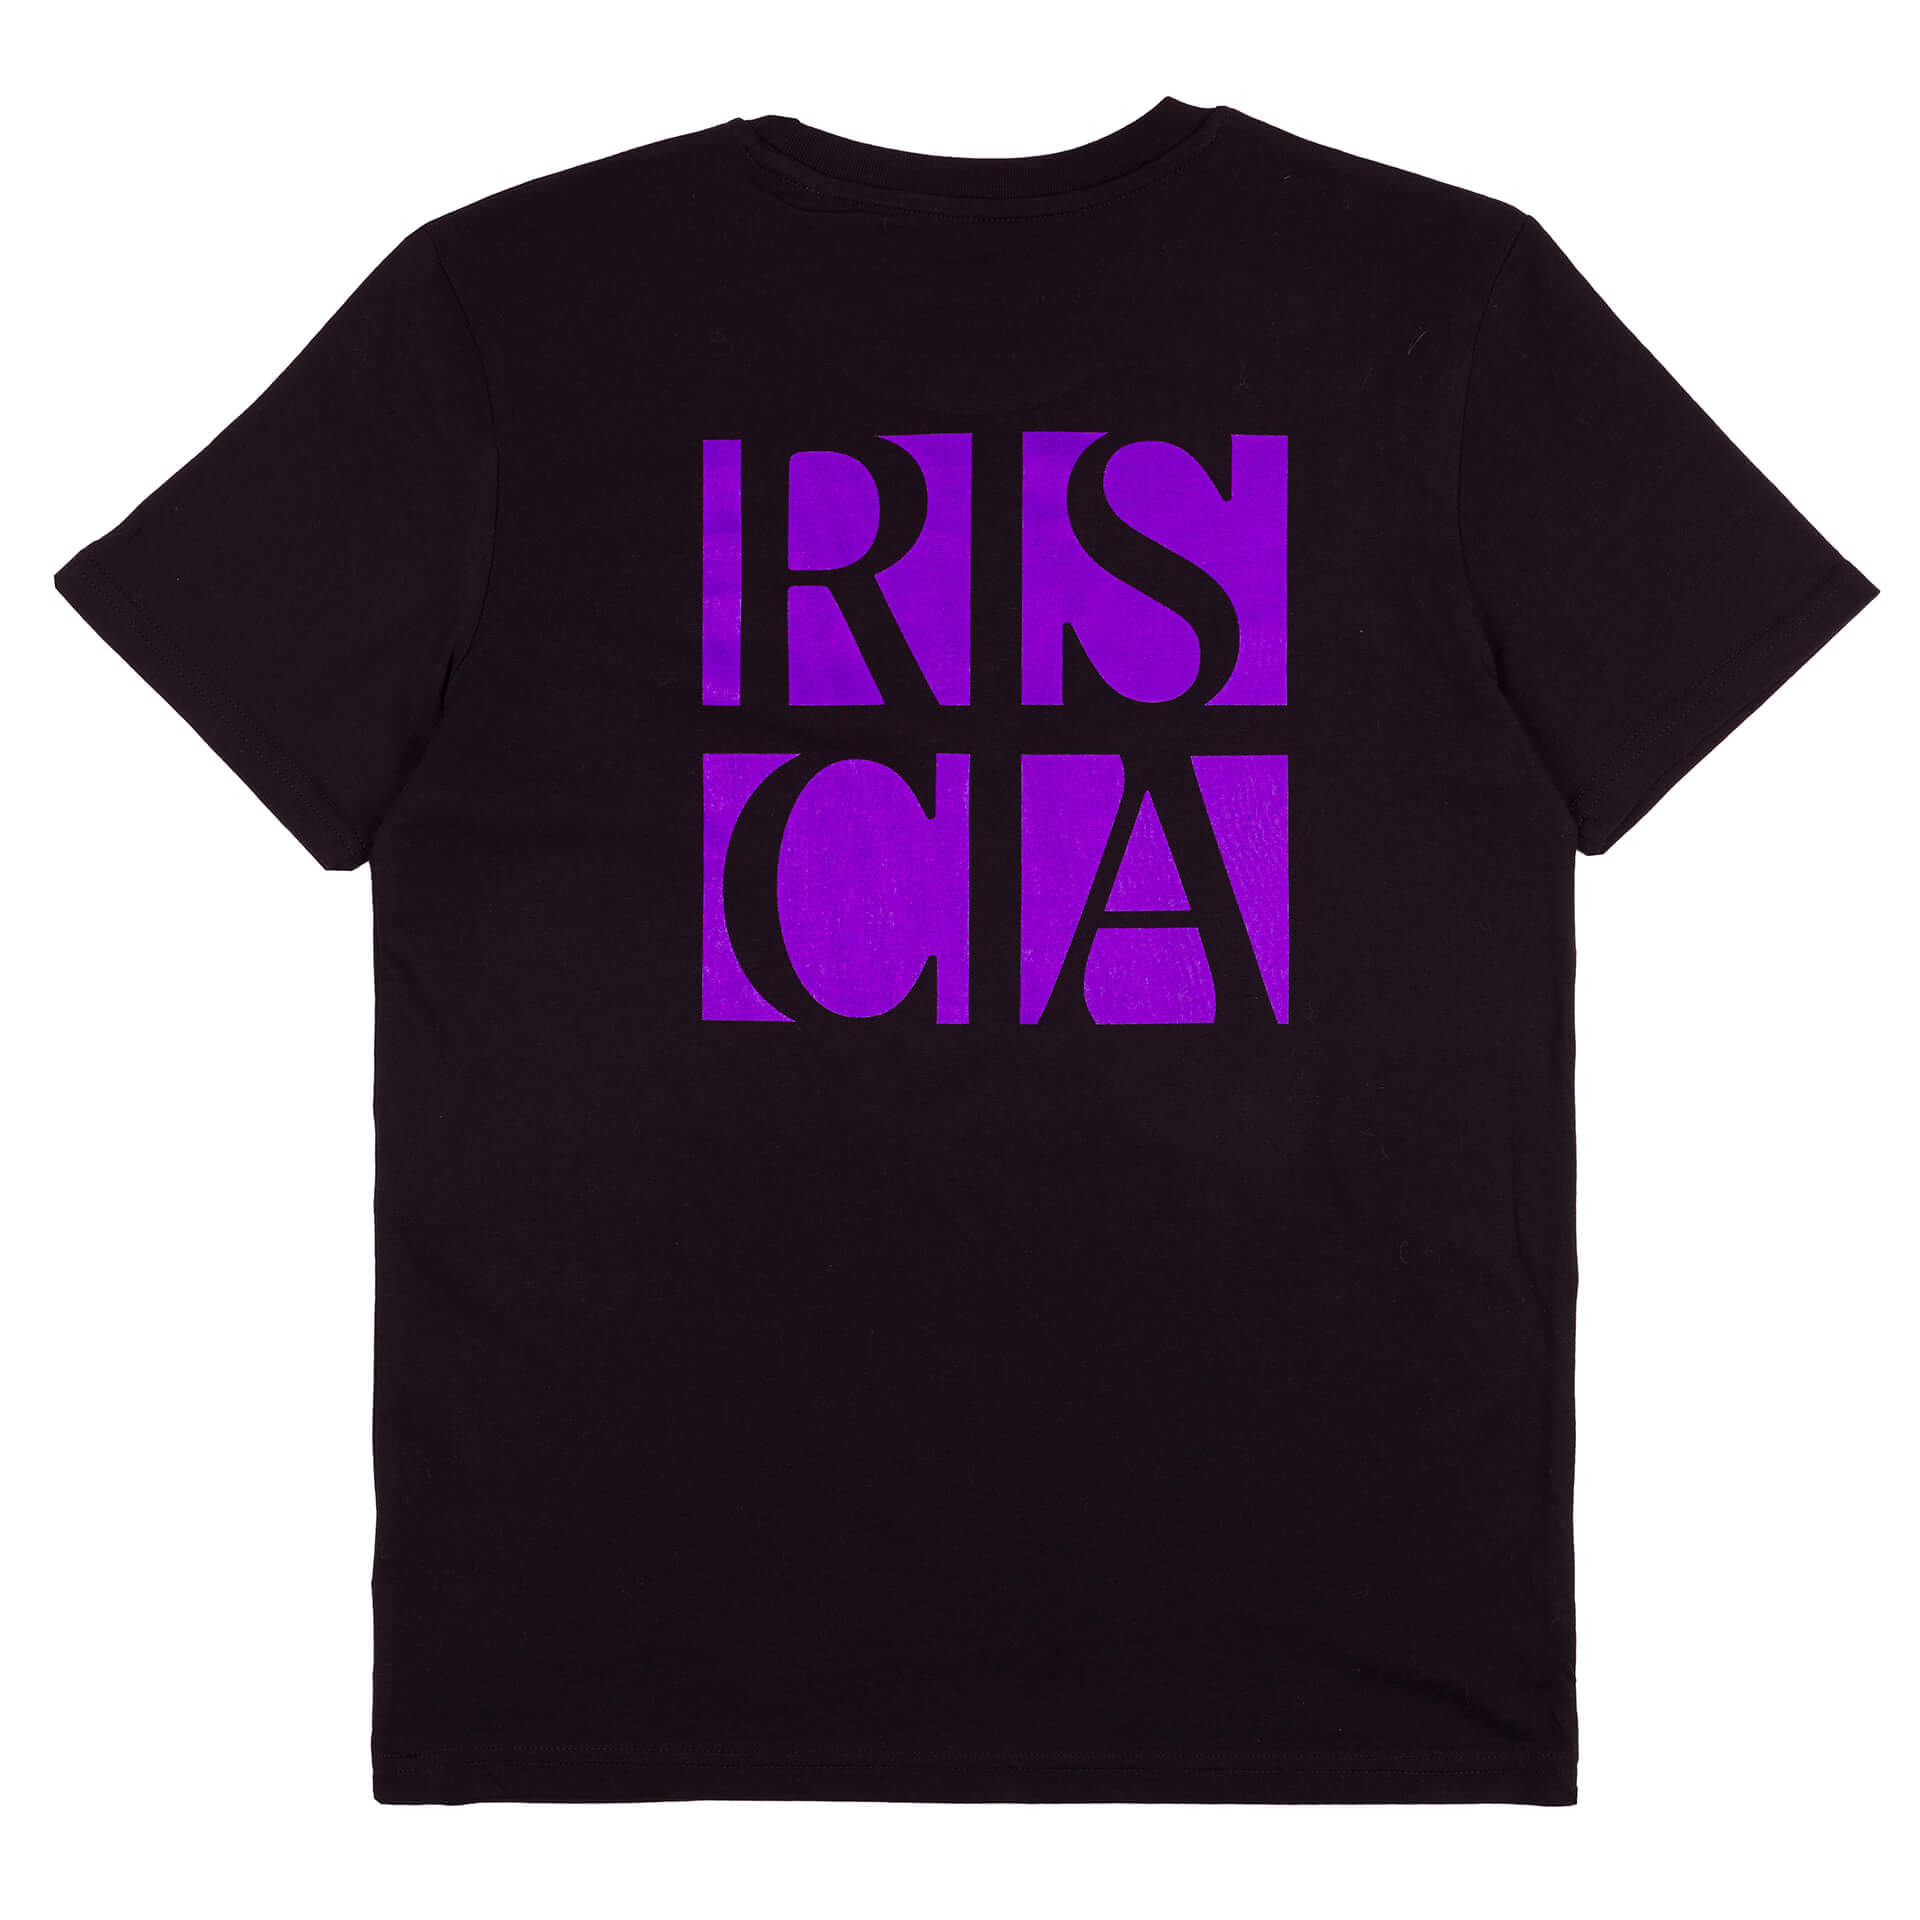 RSCA Square T-shirt black